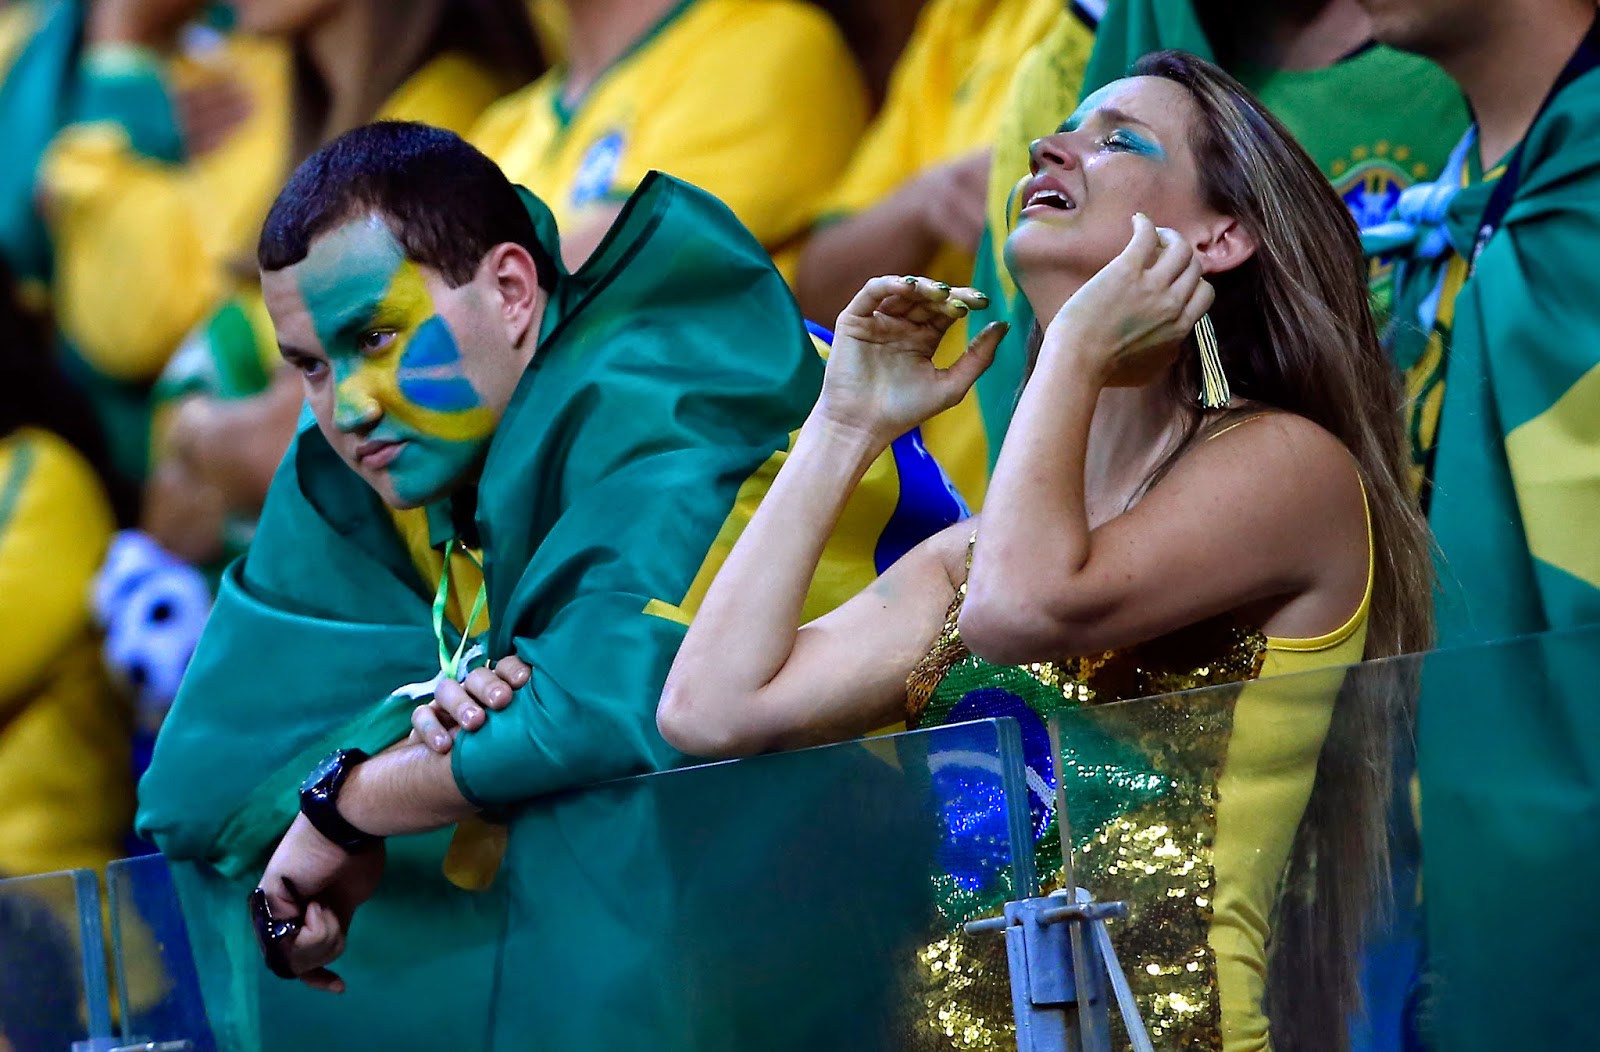 Бразилия первая в мире. ЧМ 2014 Германия Бразилия 7:1. Бразилия 2014 финал.